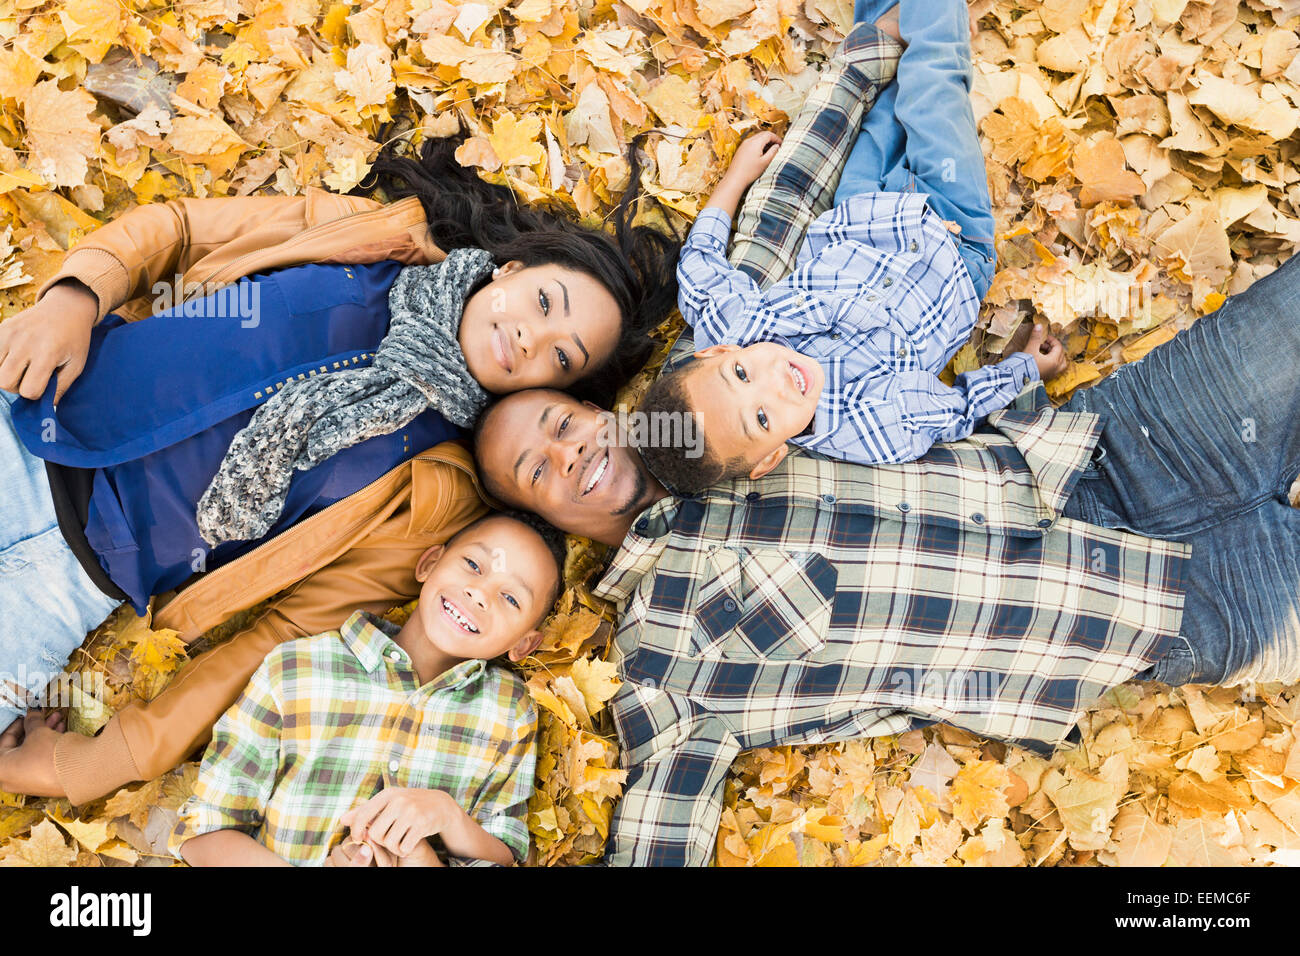 Familie zusammen zu legen, im Herbst Blätter Stockfoto